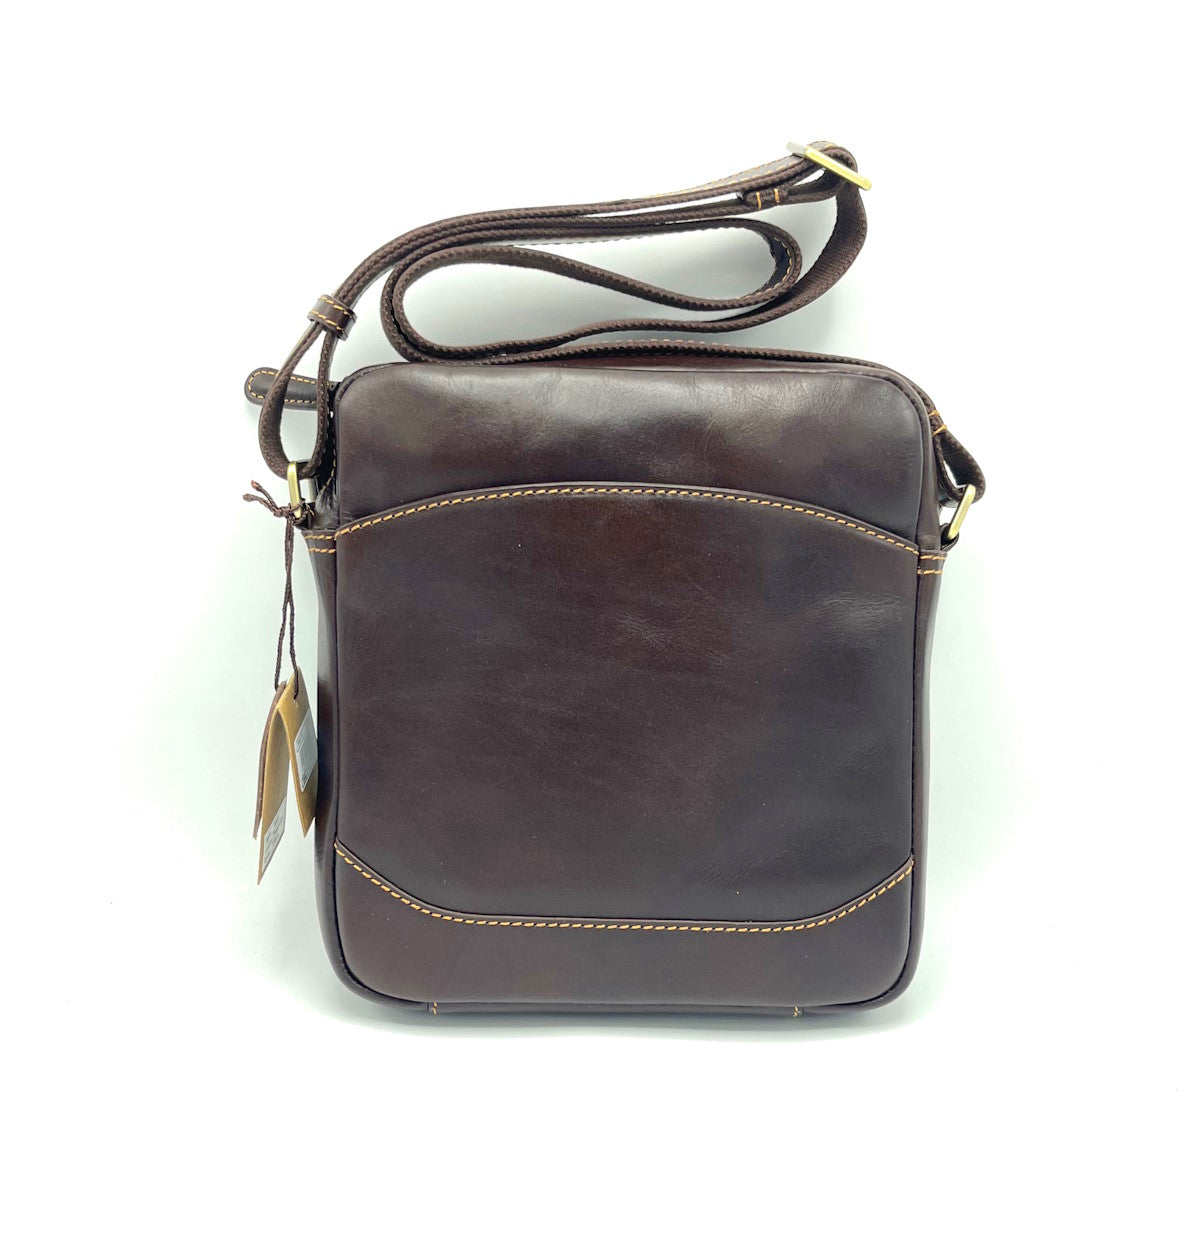 Buffered leather shoulder bag, for men, art. TA4807